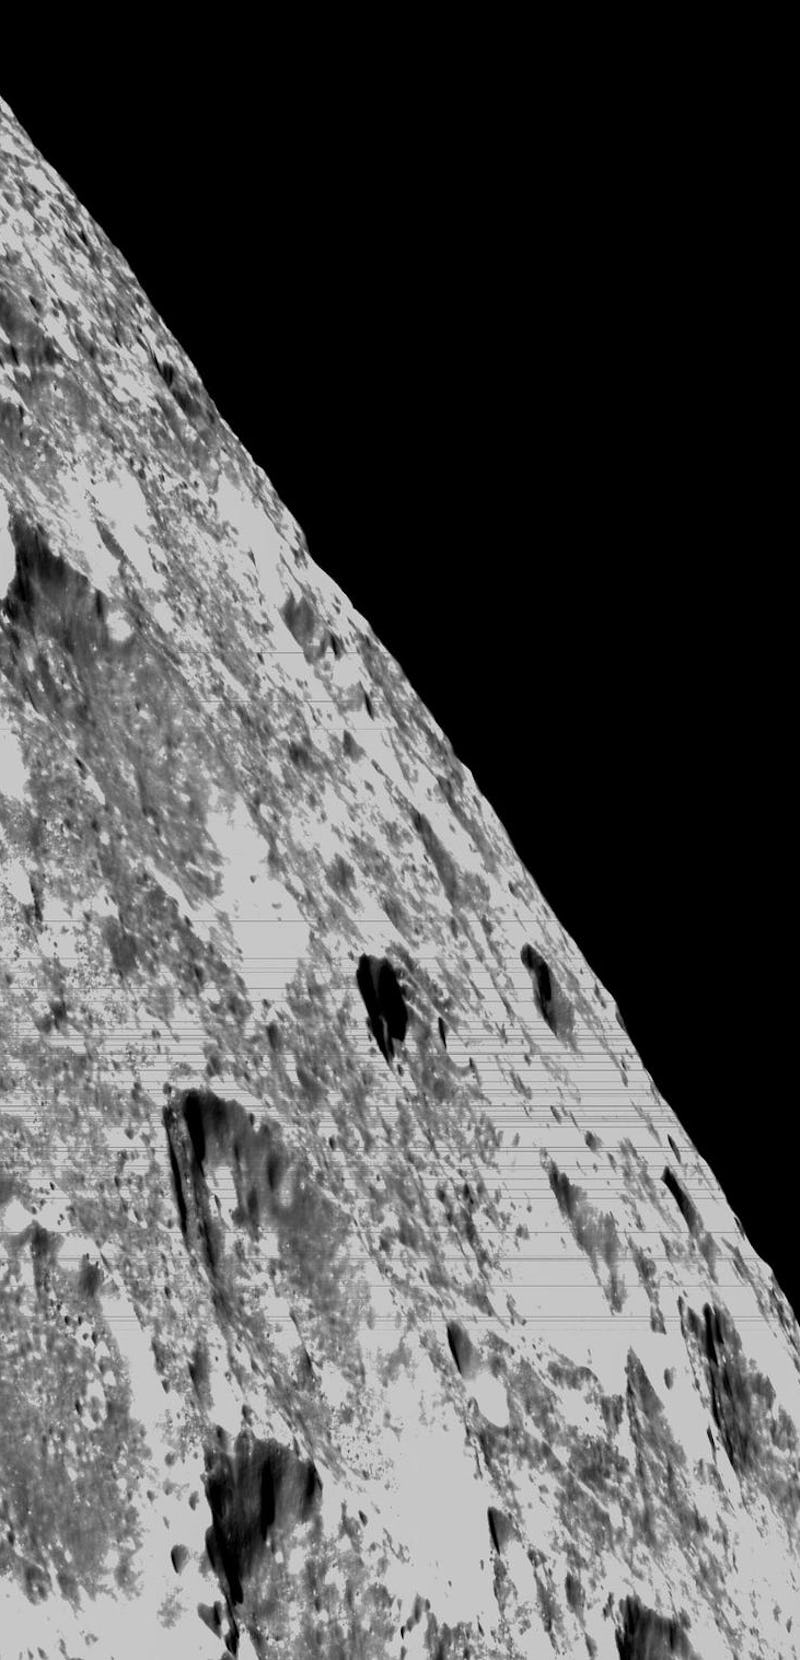 lunar surface captured by Orion navigation camera